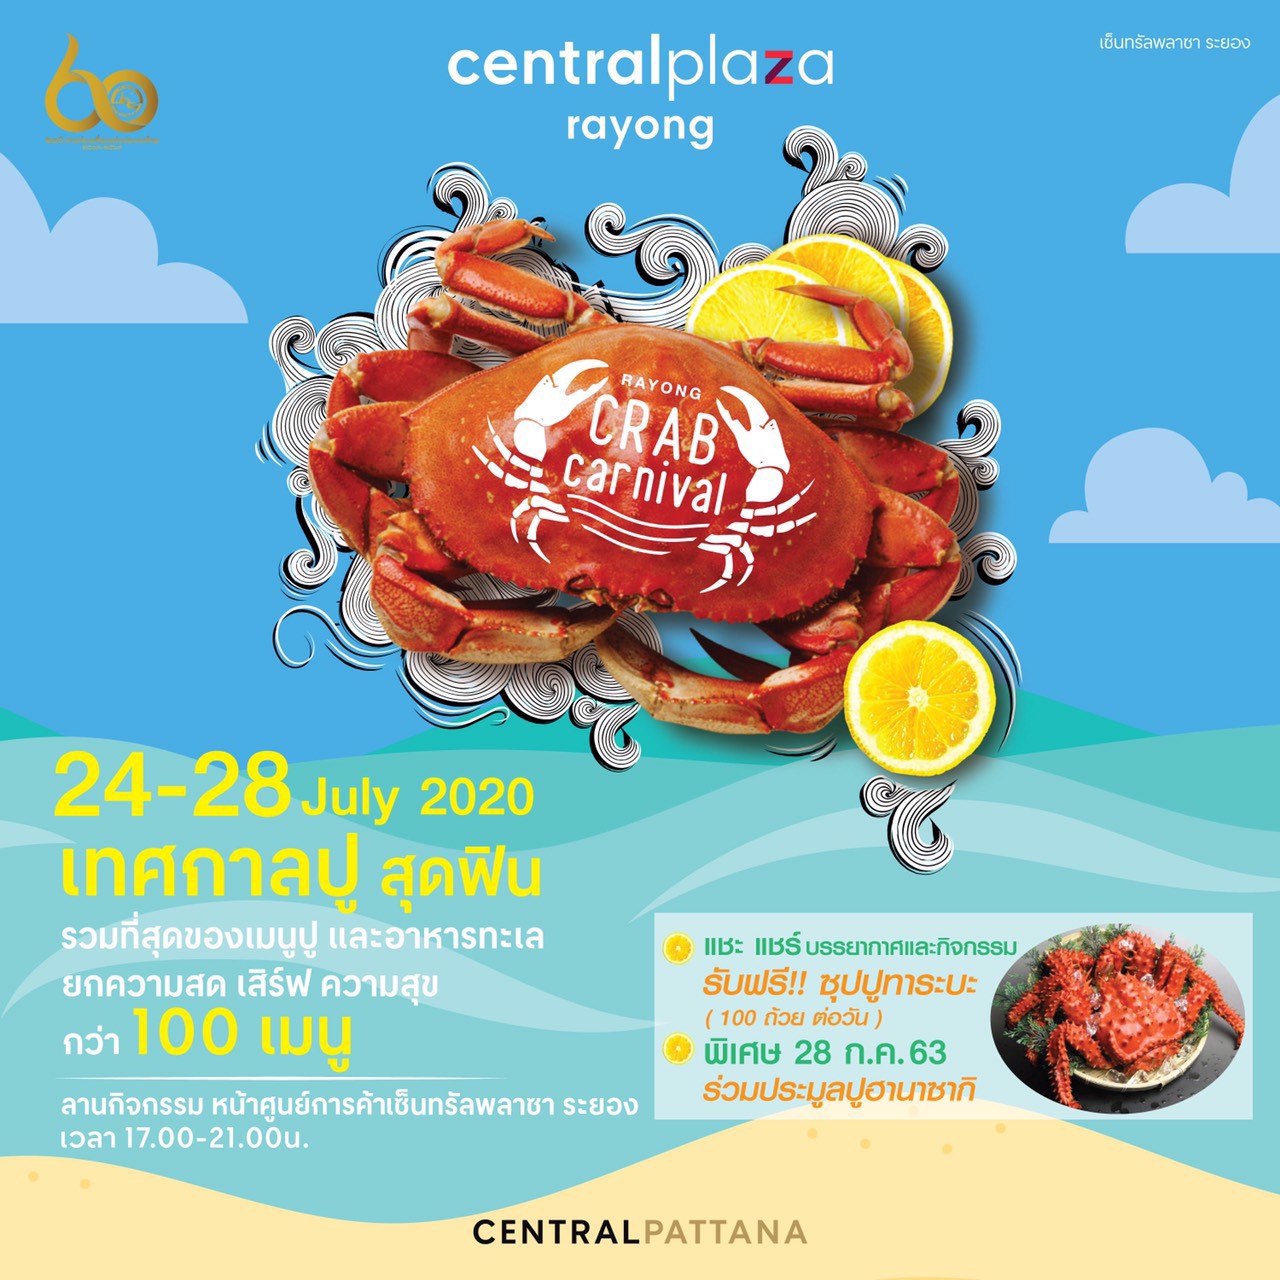 เซ็นทรัลพลาซา ระยอง รวมพลคนชอบปูจัดงาน Rayong Crab Carnival เทศกาลปูสุดฟิน ระหว่างวันที่ 24-28 กค.63